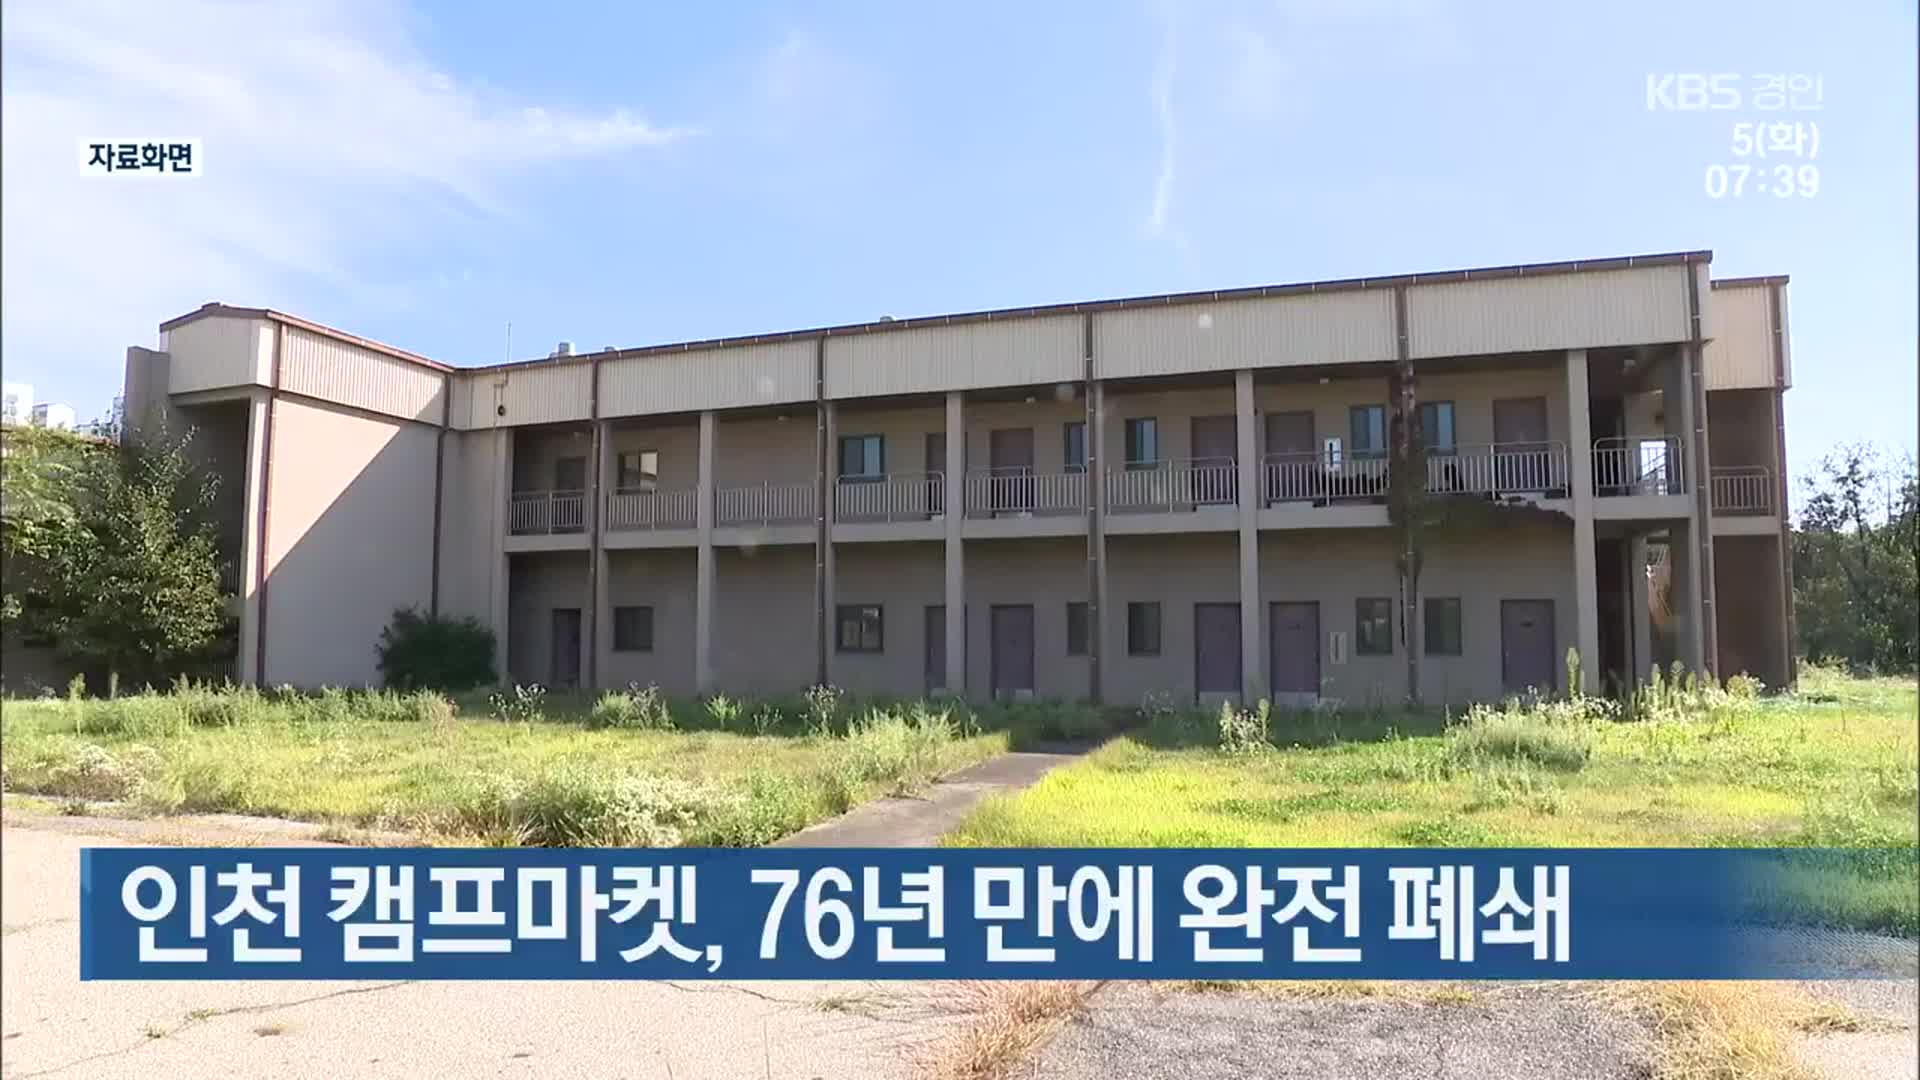 인천 캠프마켓, 76년 만에 완전 폐쇄